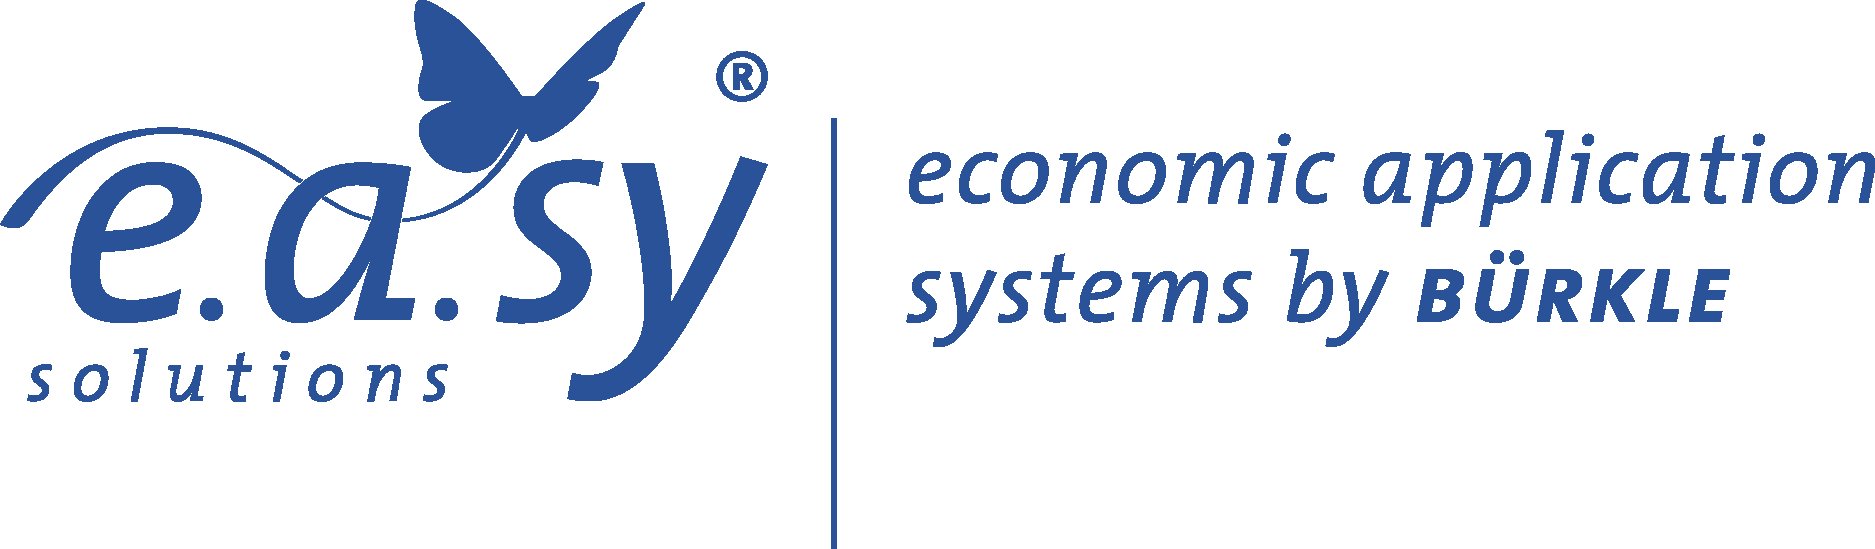 e.a.sy solutions Logo Vector